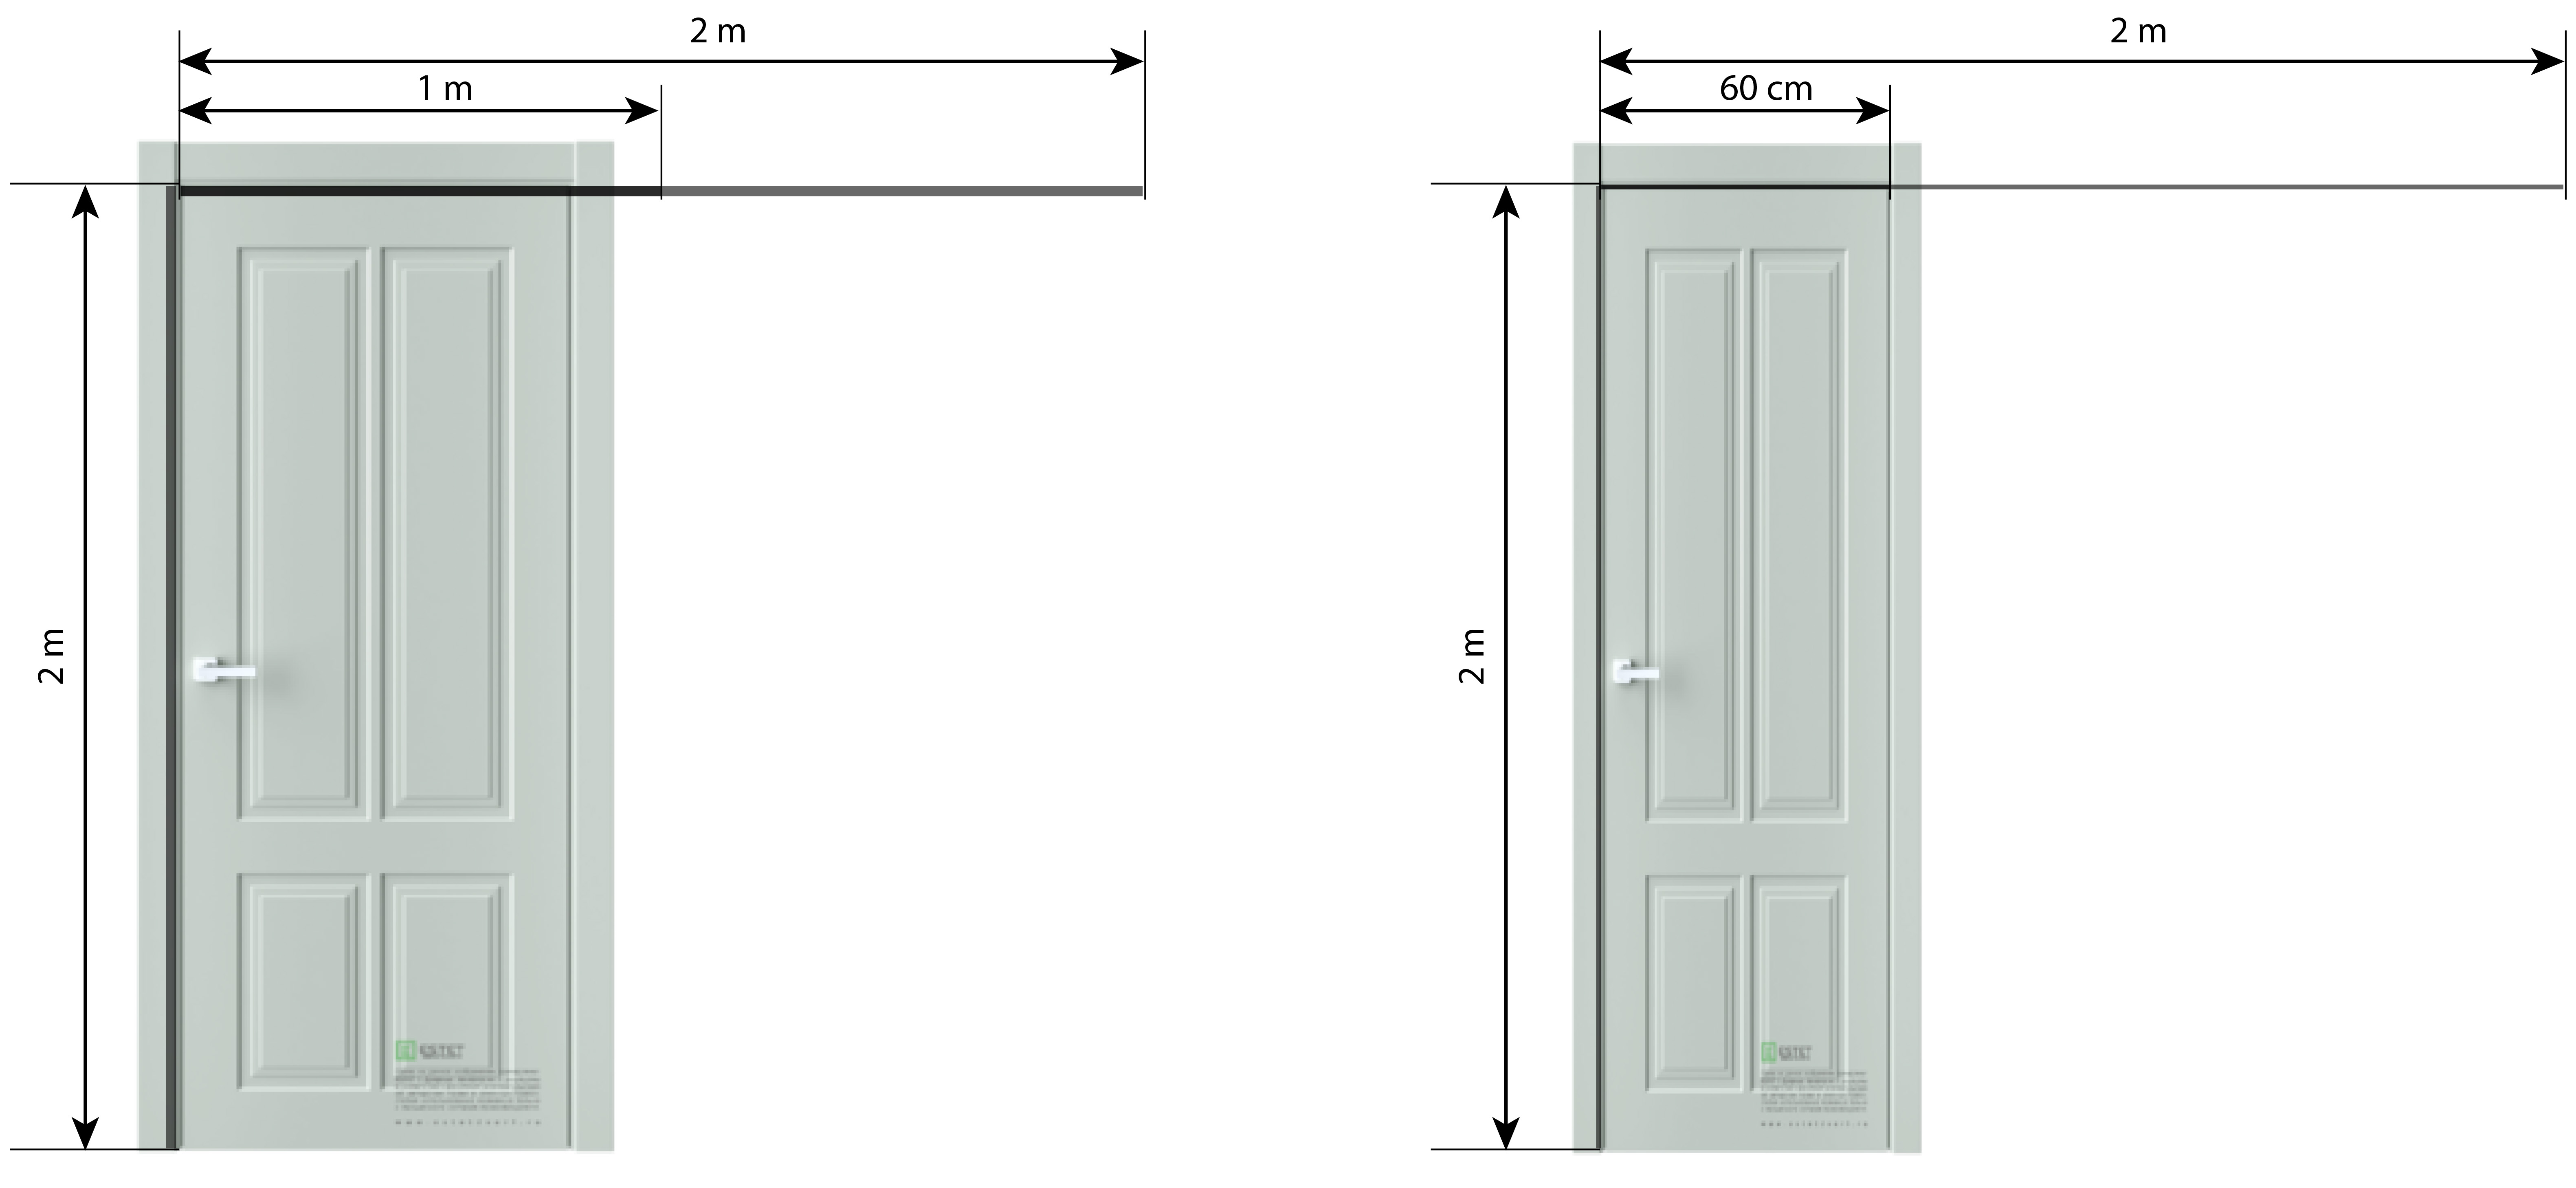 Дверь межкомнатная 80 см. Высота проема для полотна 2300. Высота дверей 2.80 ширина 50см. Дверное полотно ширина 700 с наличником. Межкомнатные двери высота 2100.